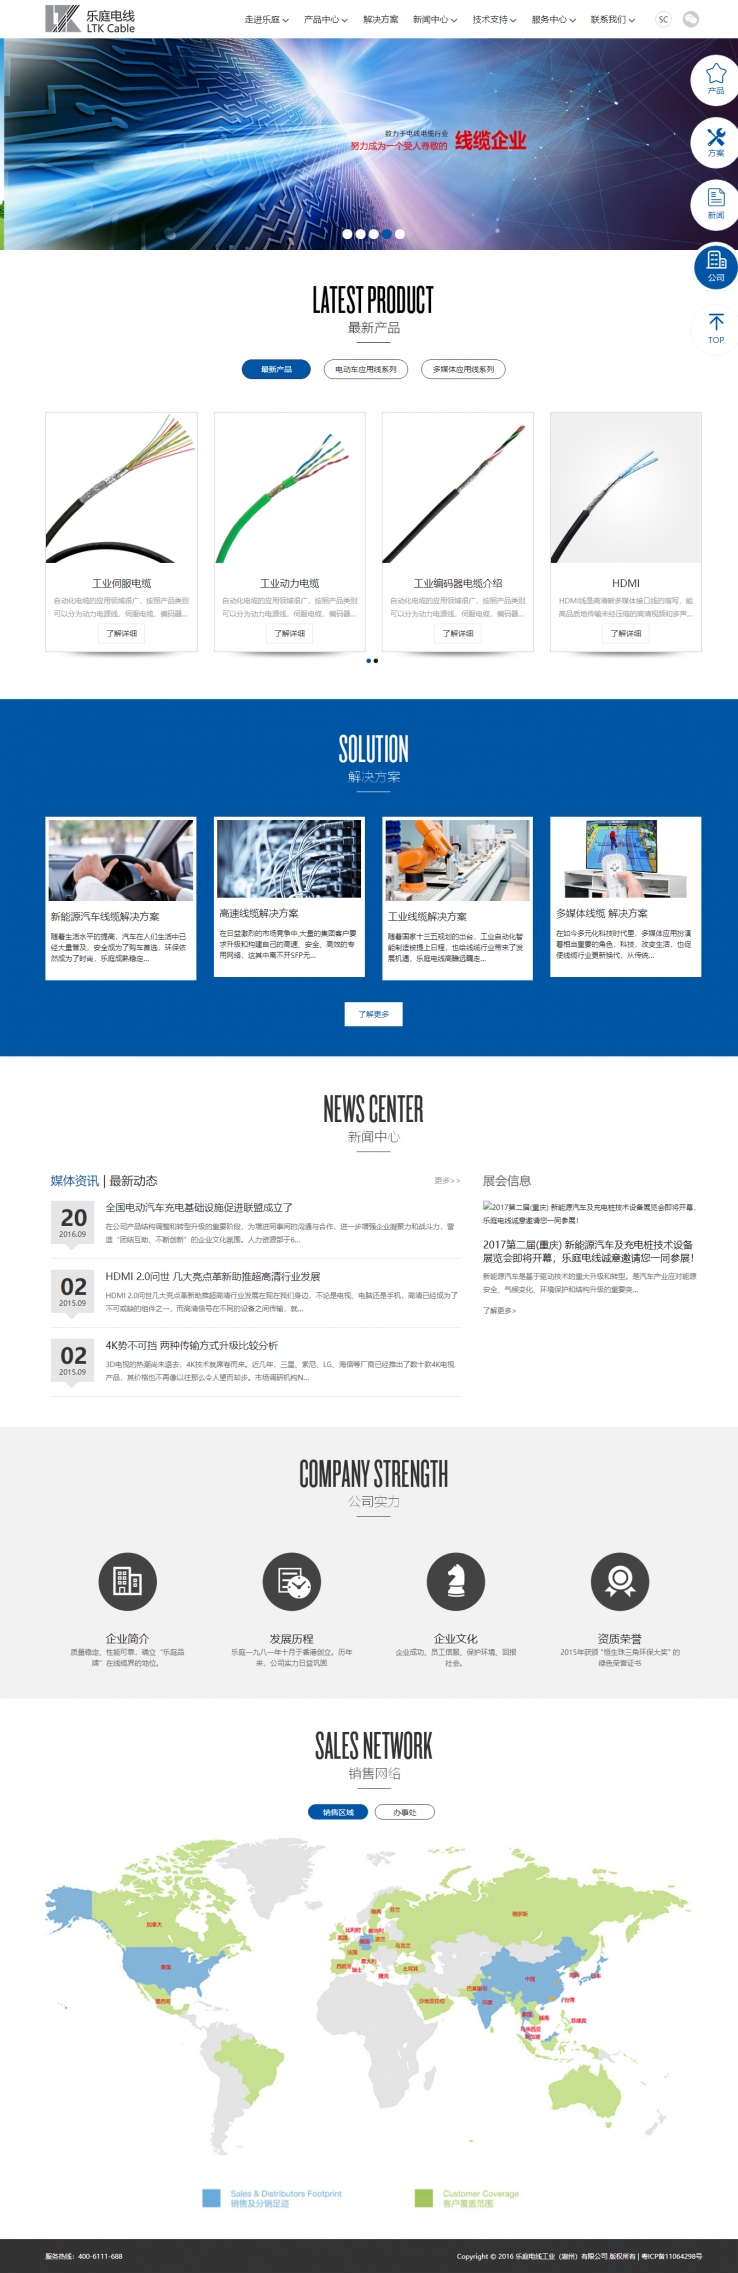 蓝色简洁风格的电线工业公司企业网站源码下载